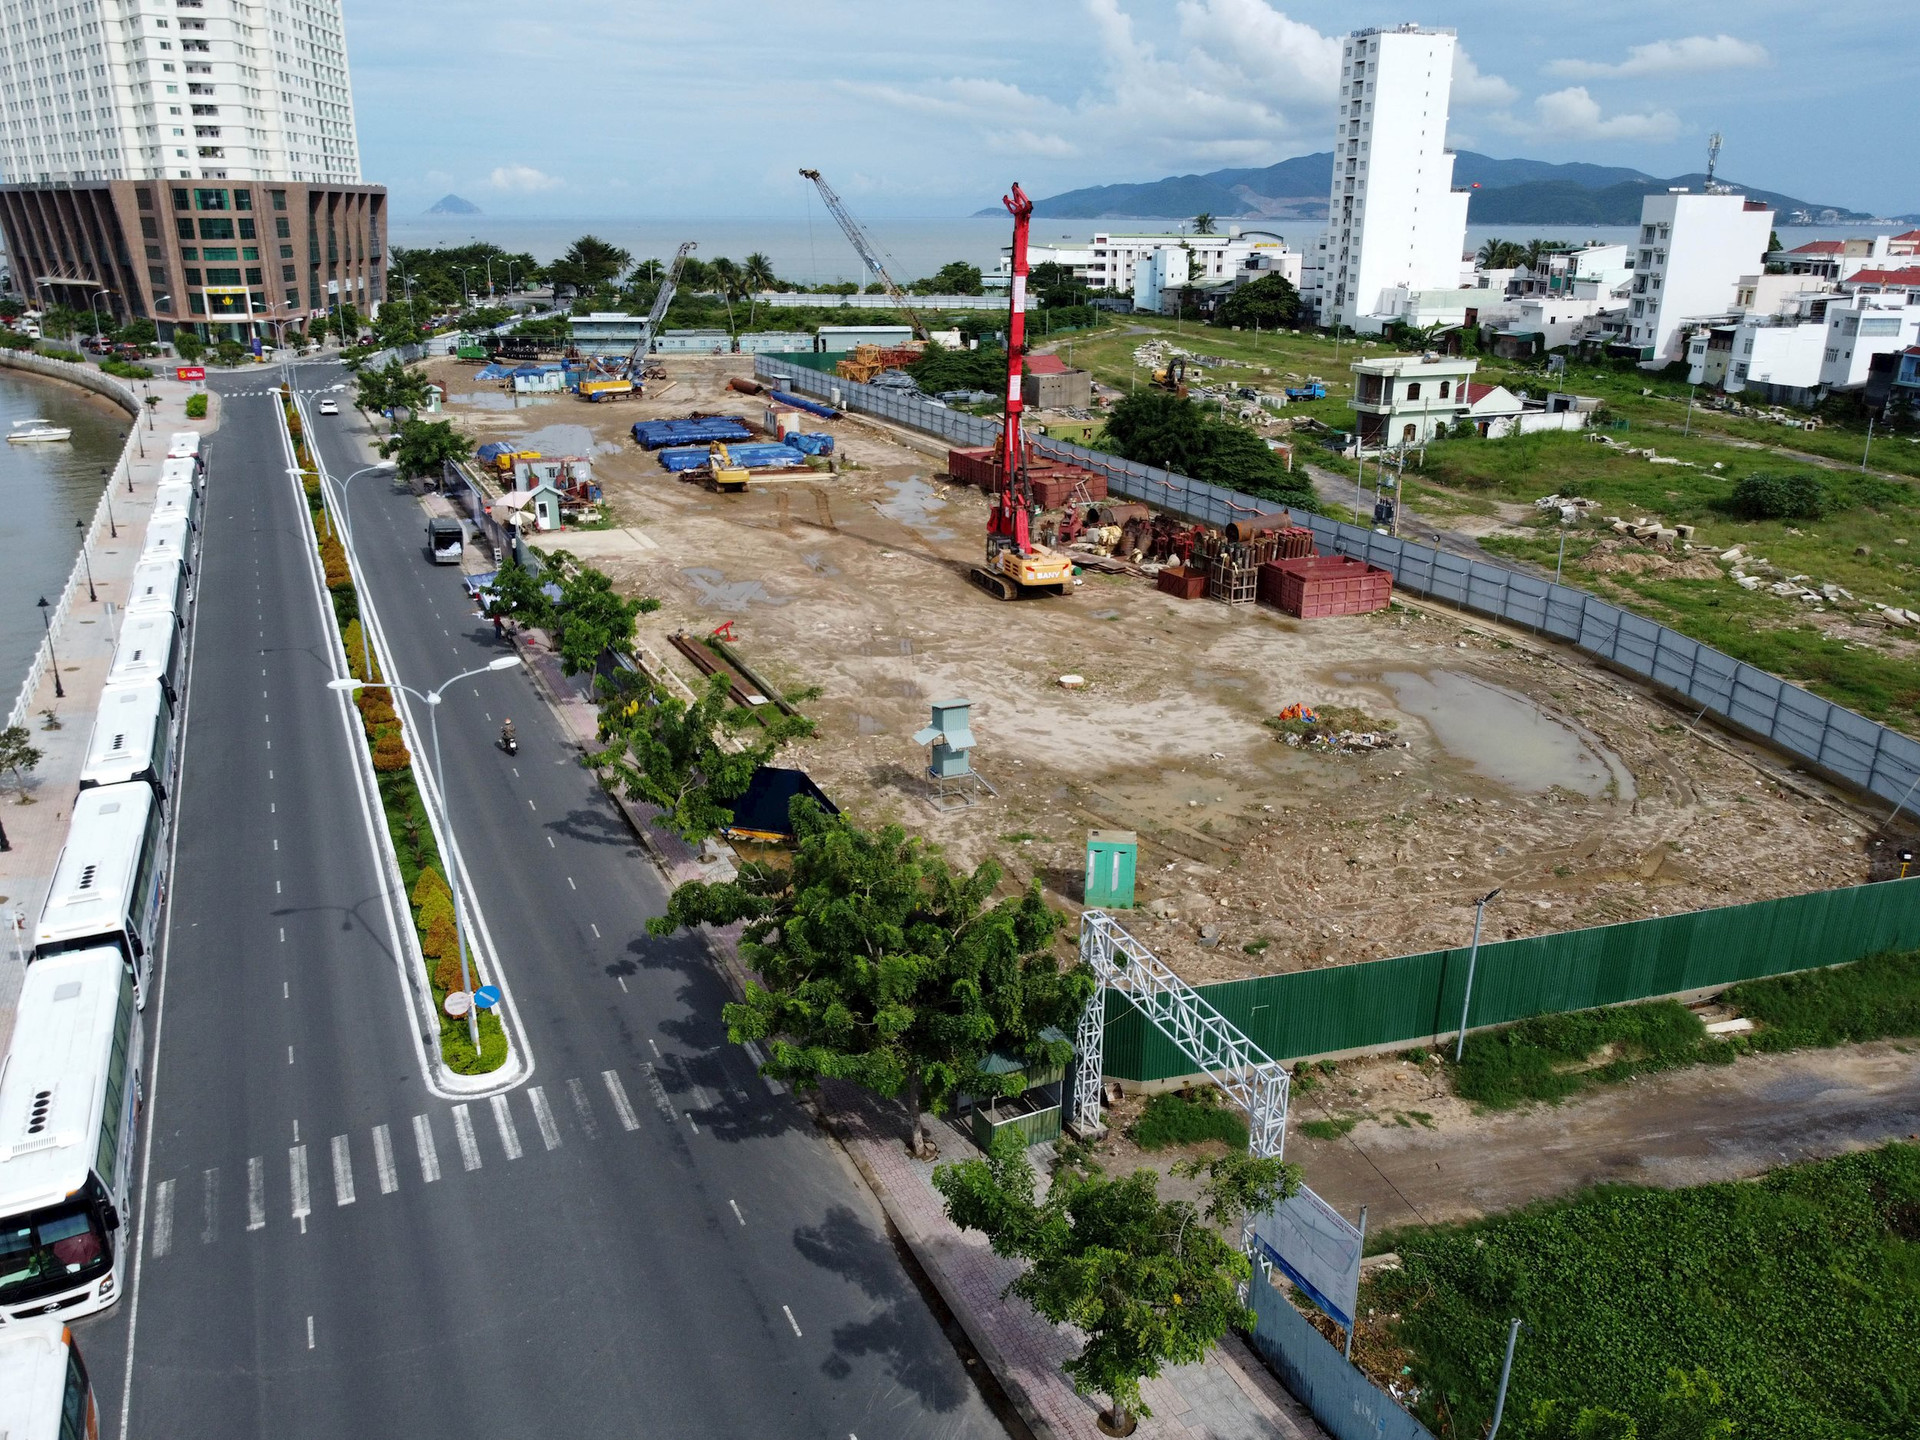 Hải Phát Invest muốn chuyển nhượng toàn bộ vốn góp vào dự án trên “đất vàng” tại TP. Nha Trang